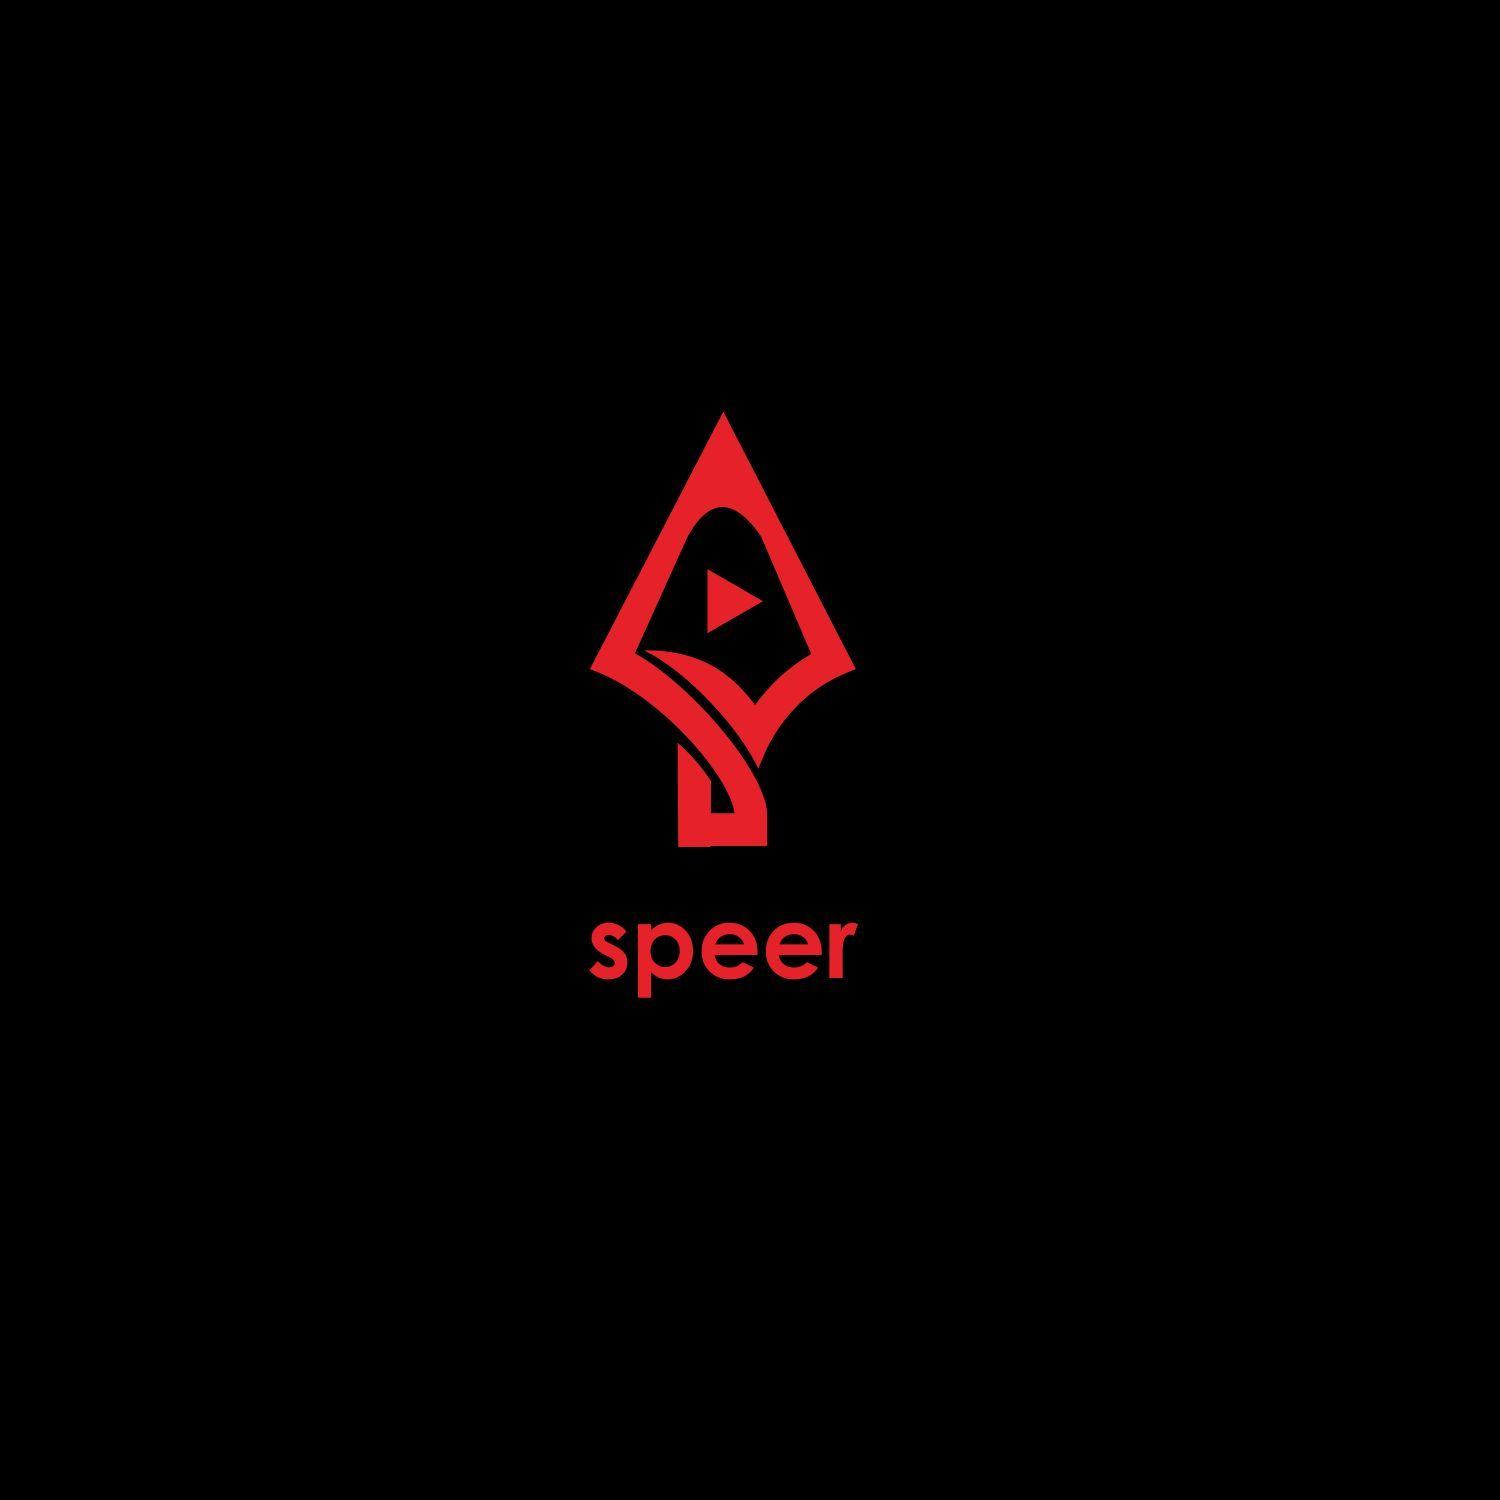 Speer Logo - Elegant, Playful Logo Design for speer by Andre_bwid | Design #19137256